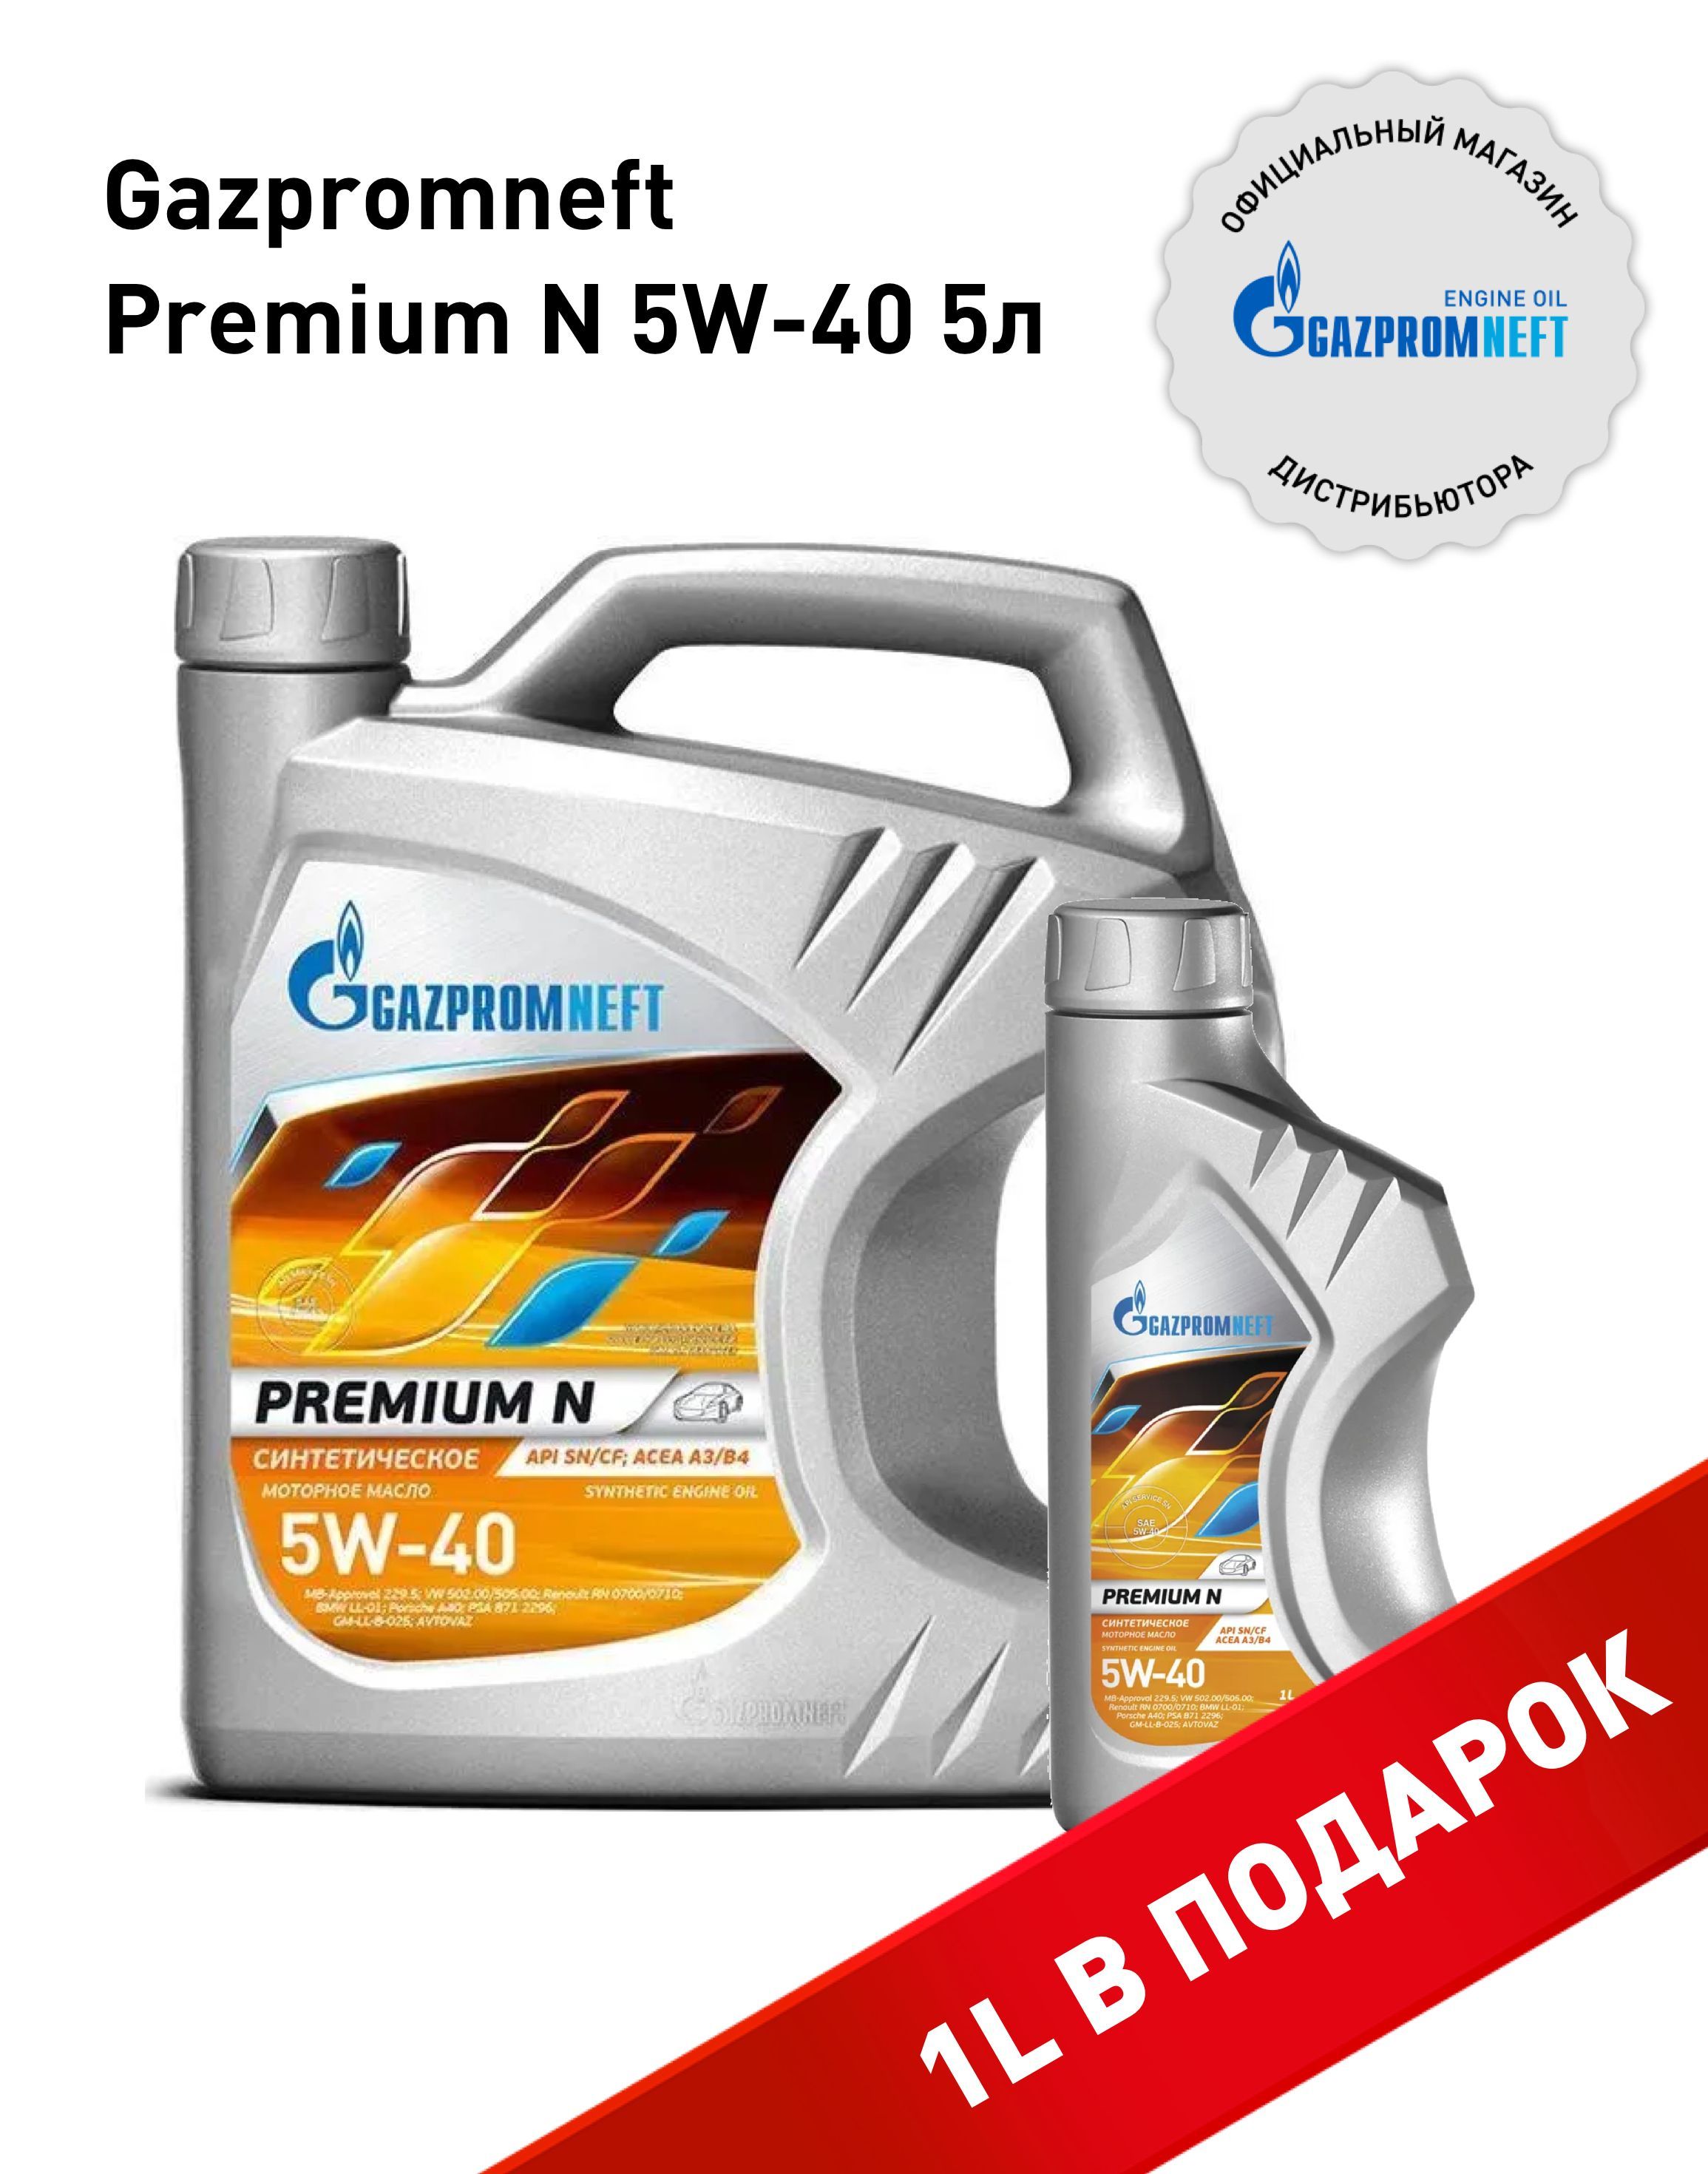 Gazpromneft масло моторное premium n 5w 40. Масло Premium n 5w-40 4л Gazpromneft.